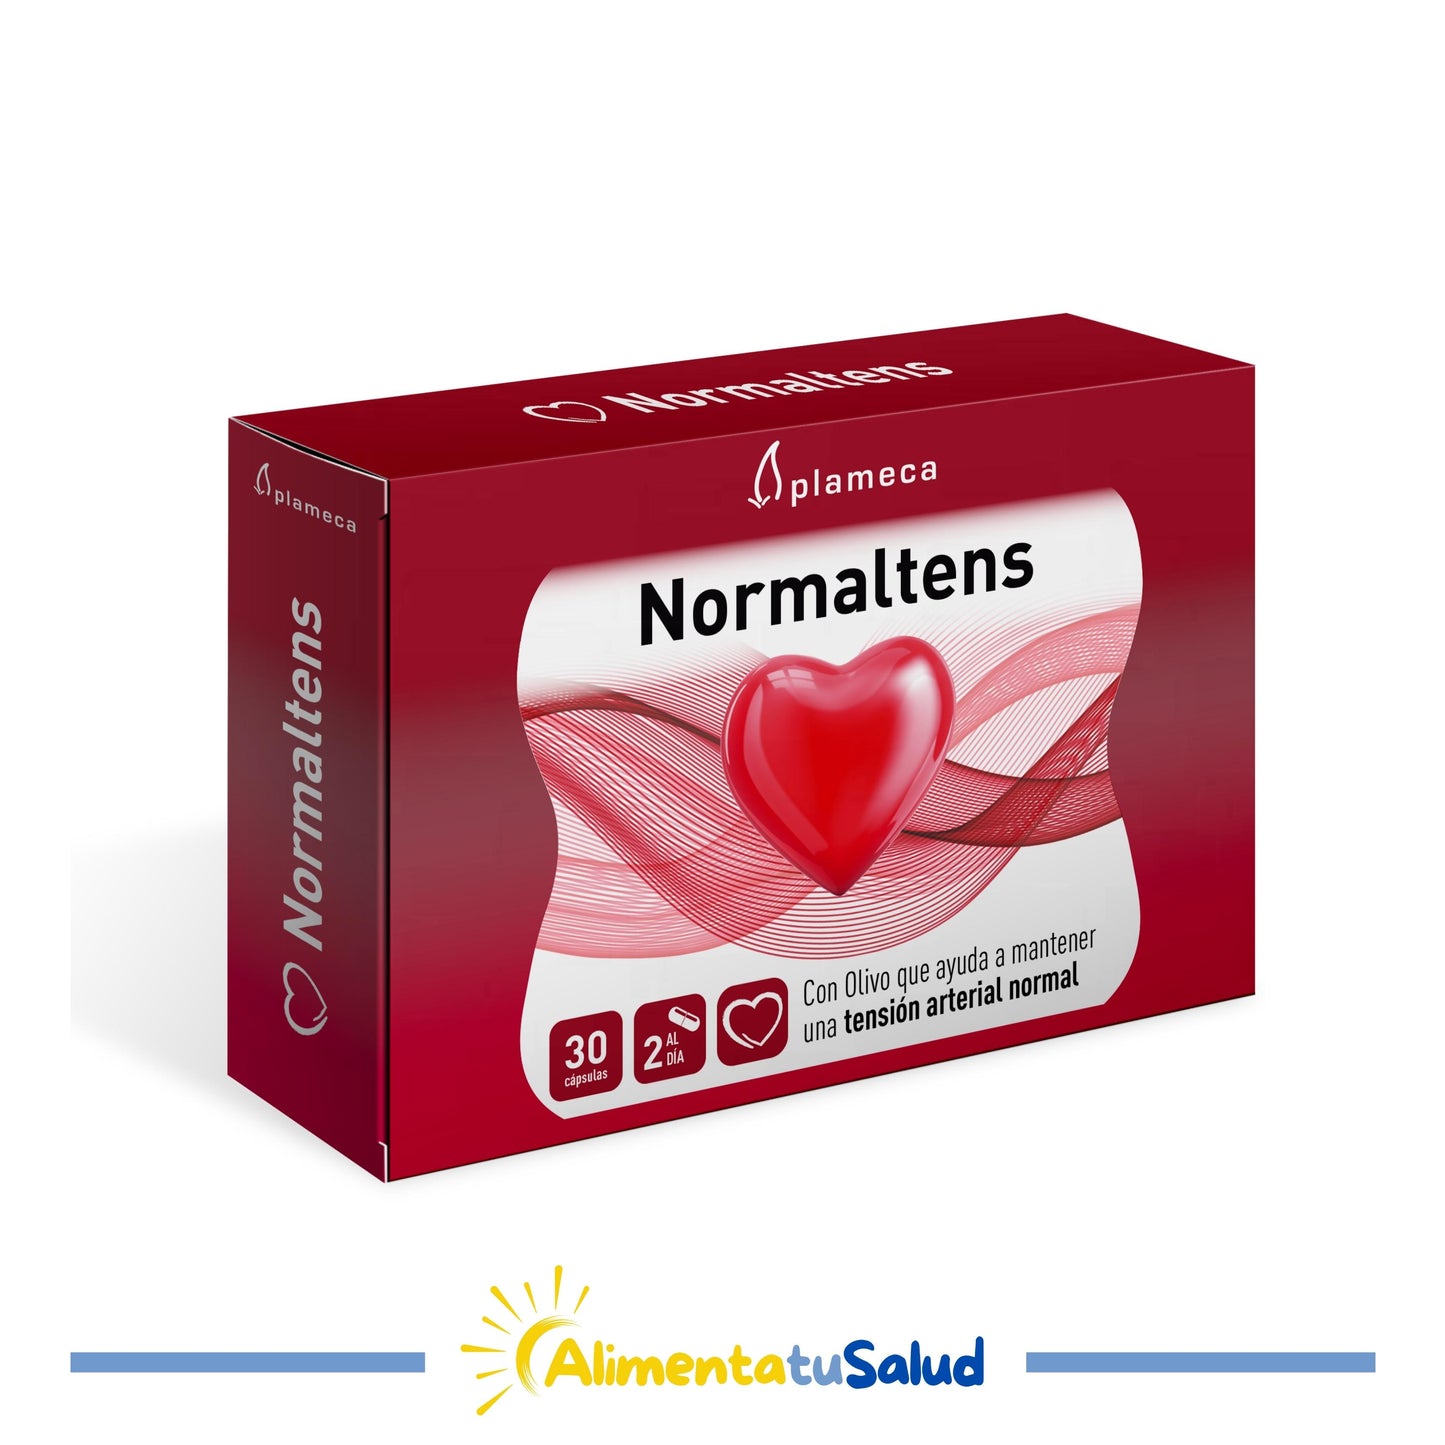 Normaltens - Plameca - 30 càpsules